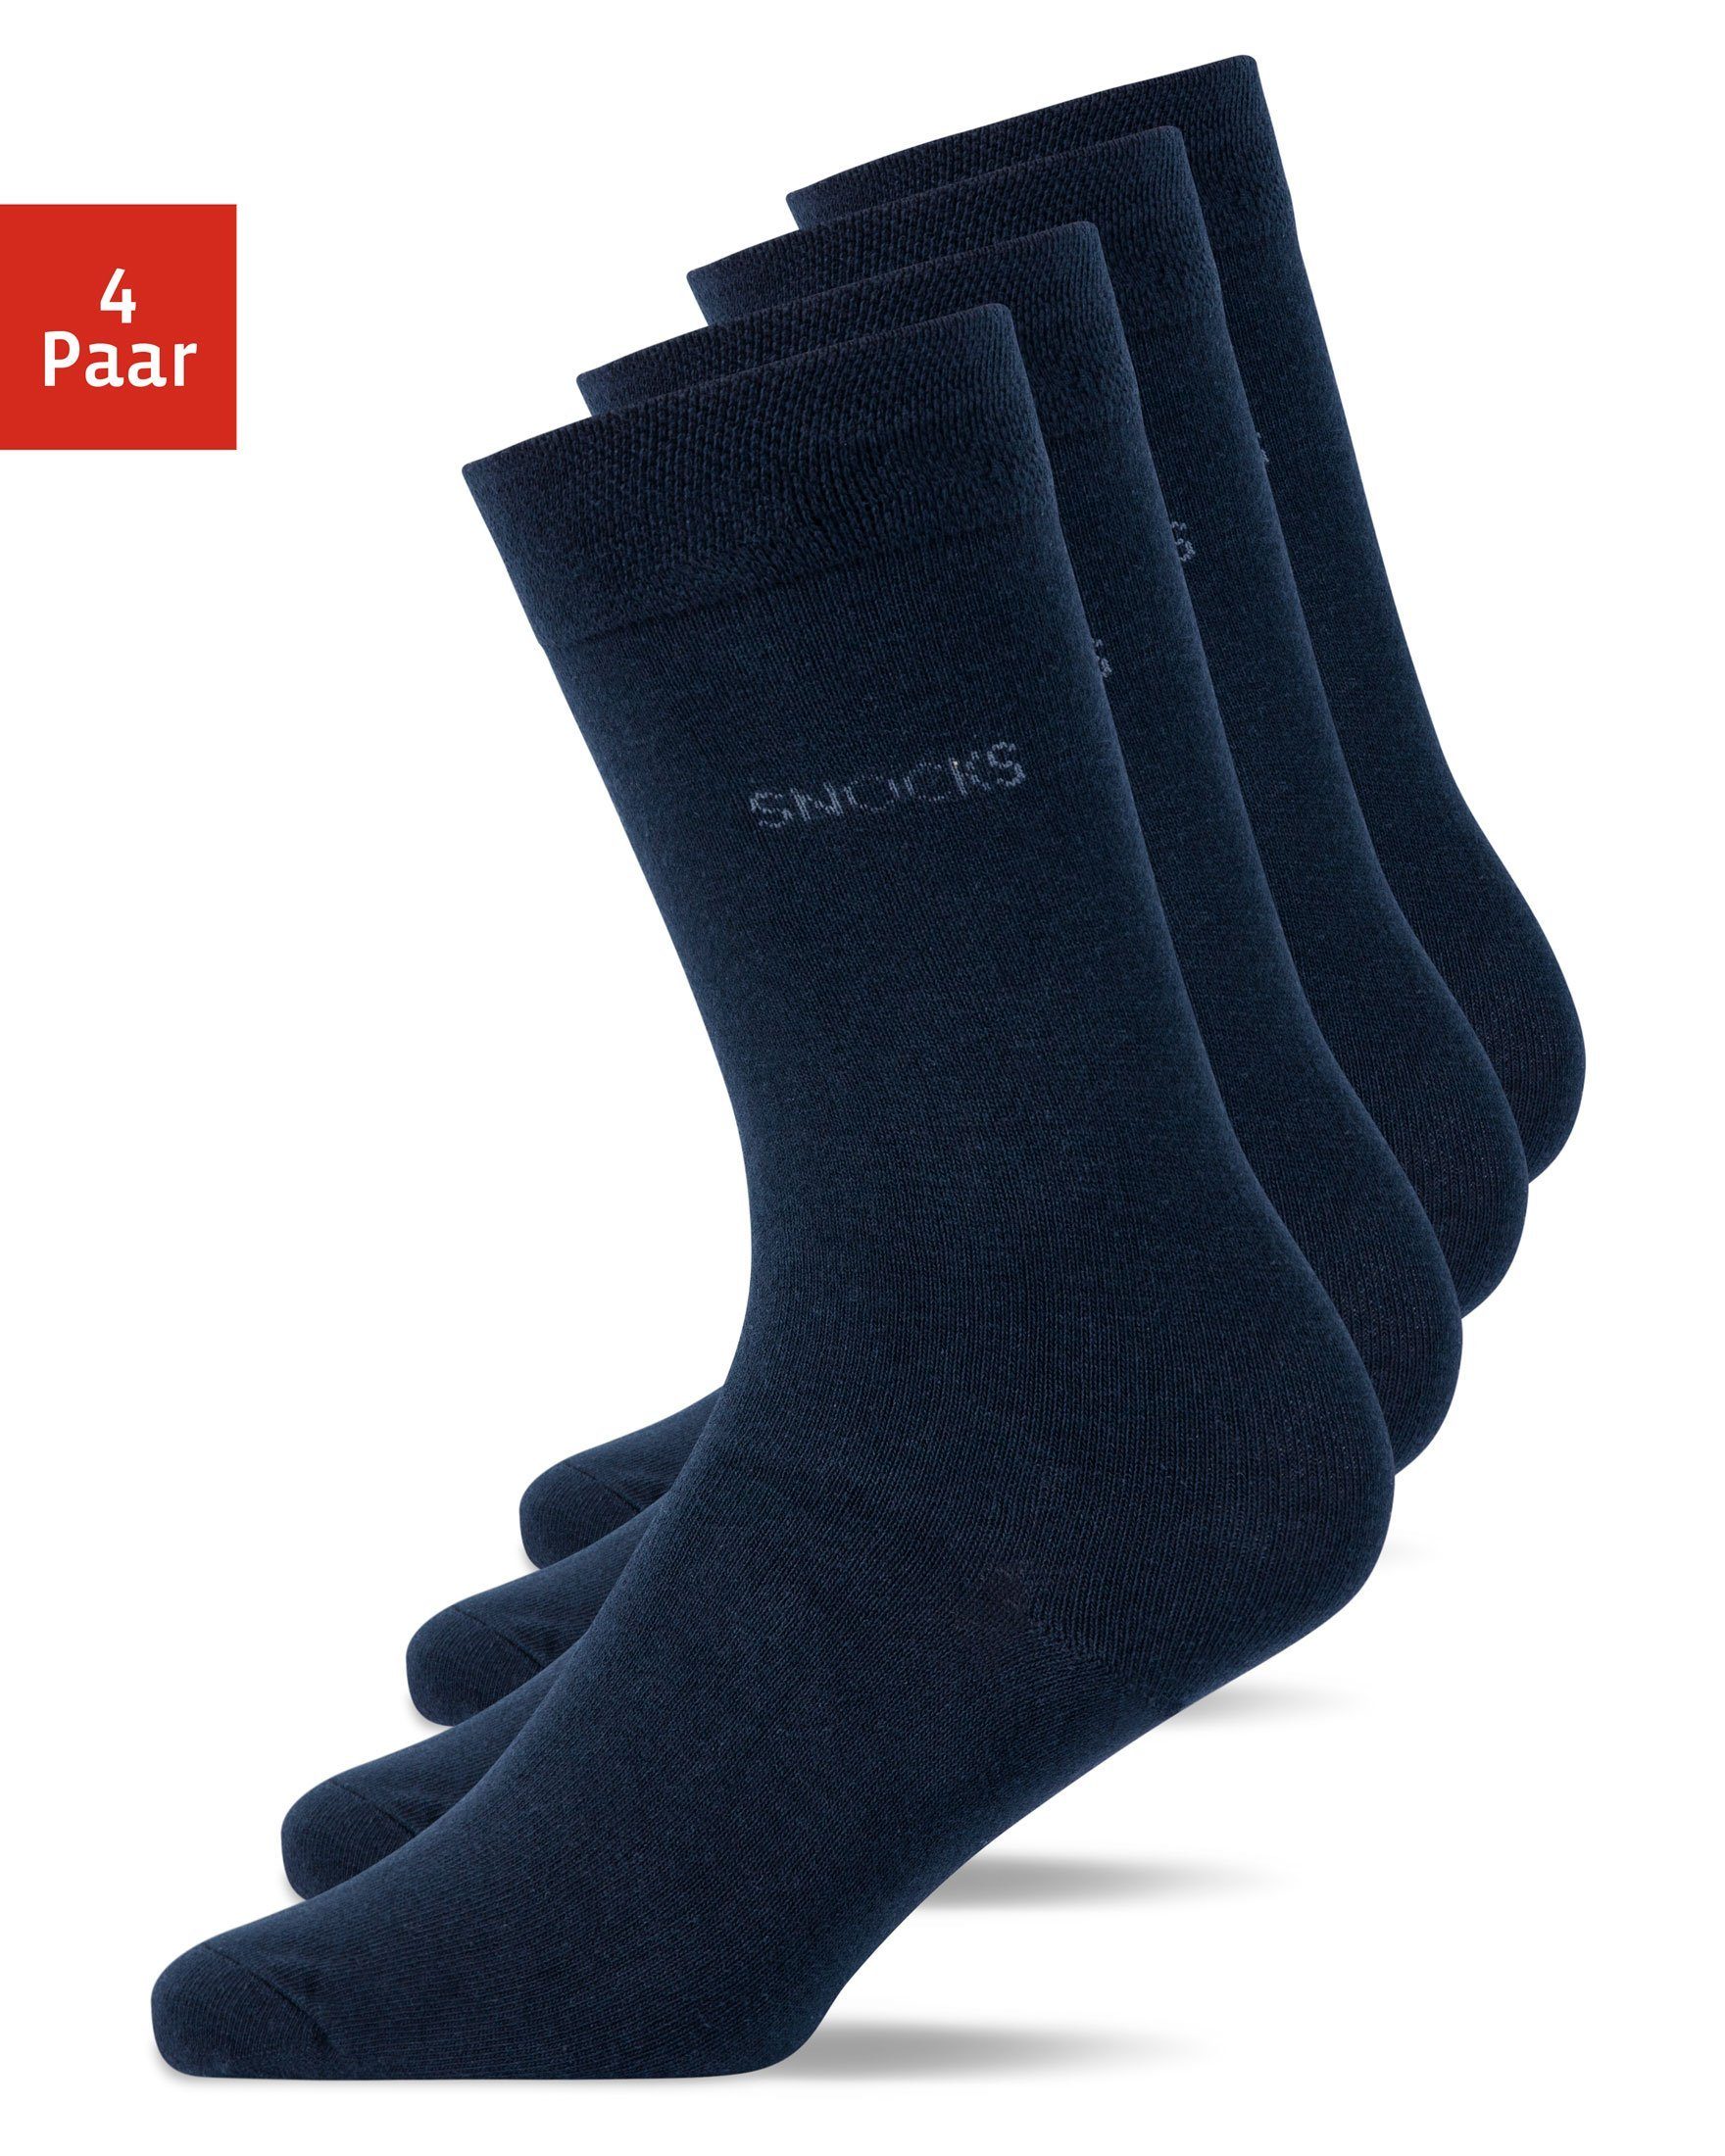 SNOCKS Businesssocken Business Socken (4-Paar) aus Bio-Baumwolle, für jeden Anzug geeignet 02 Blau